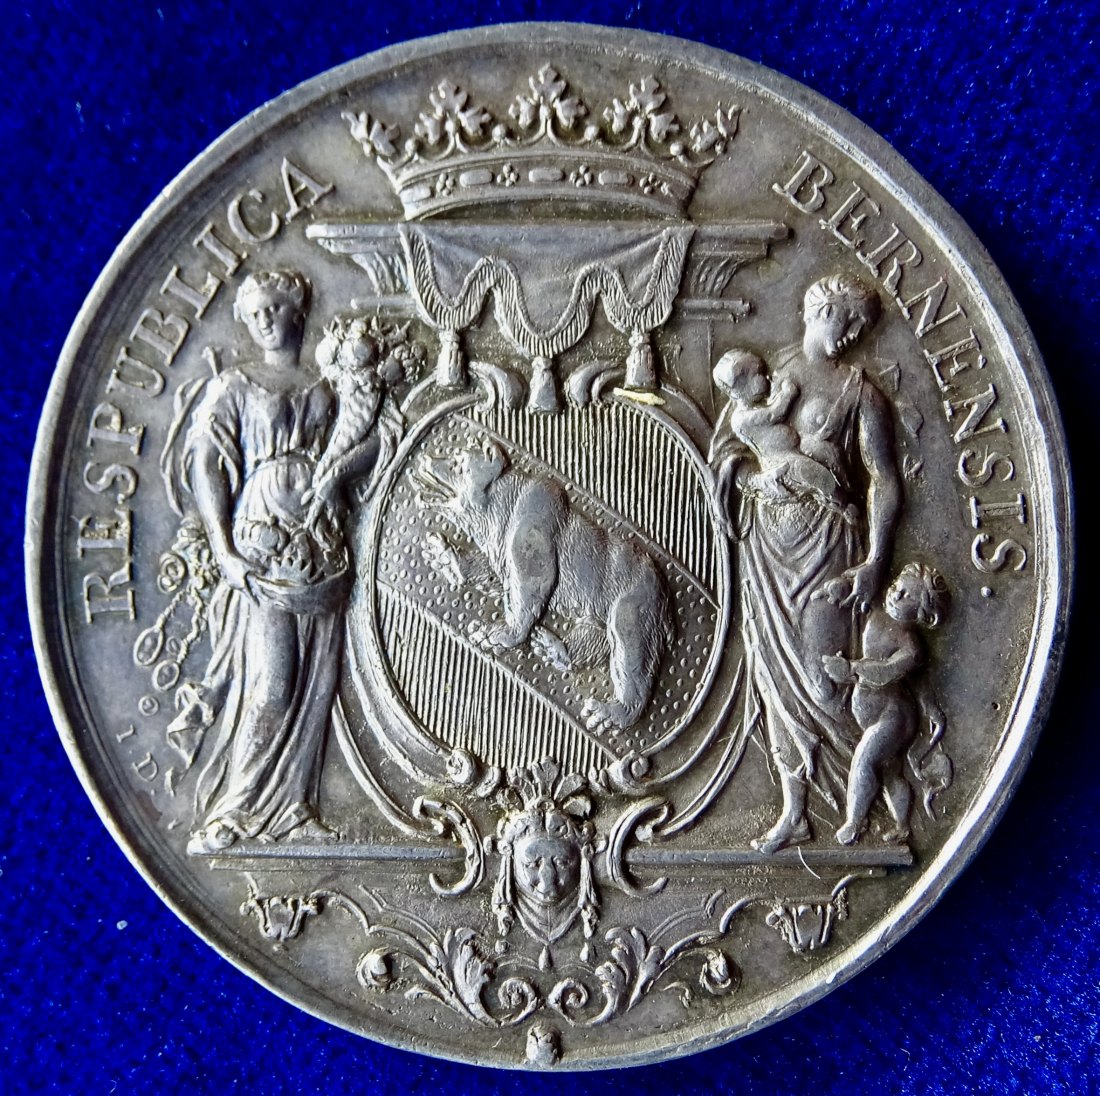  Bern, Kanton in der Schweiz, Barock Medaille 1728 o.J. von Jean Dassier   